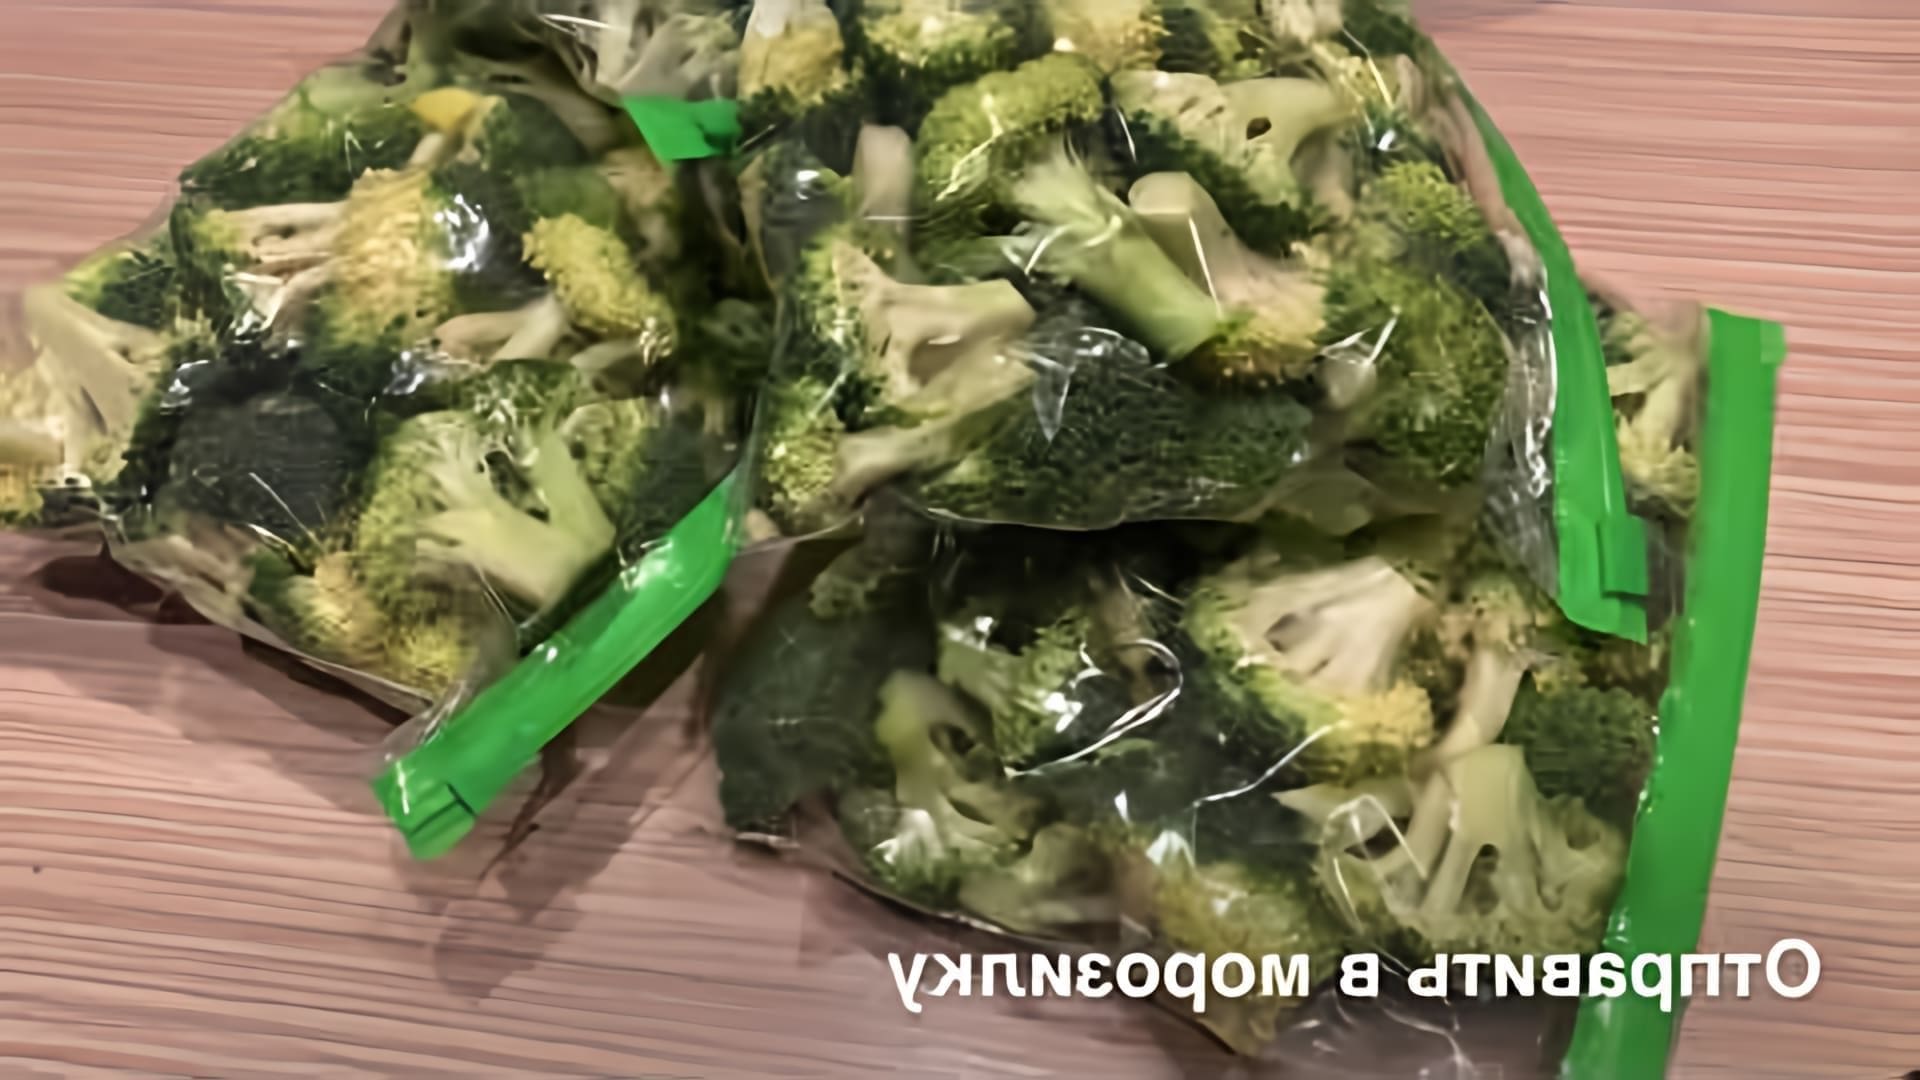 Заморозка брокколи - это простой и удобный способ сохранить свежесть и питательные свойства этого овоща на зиму